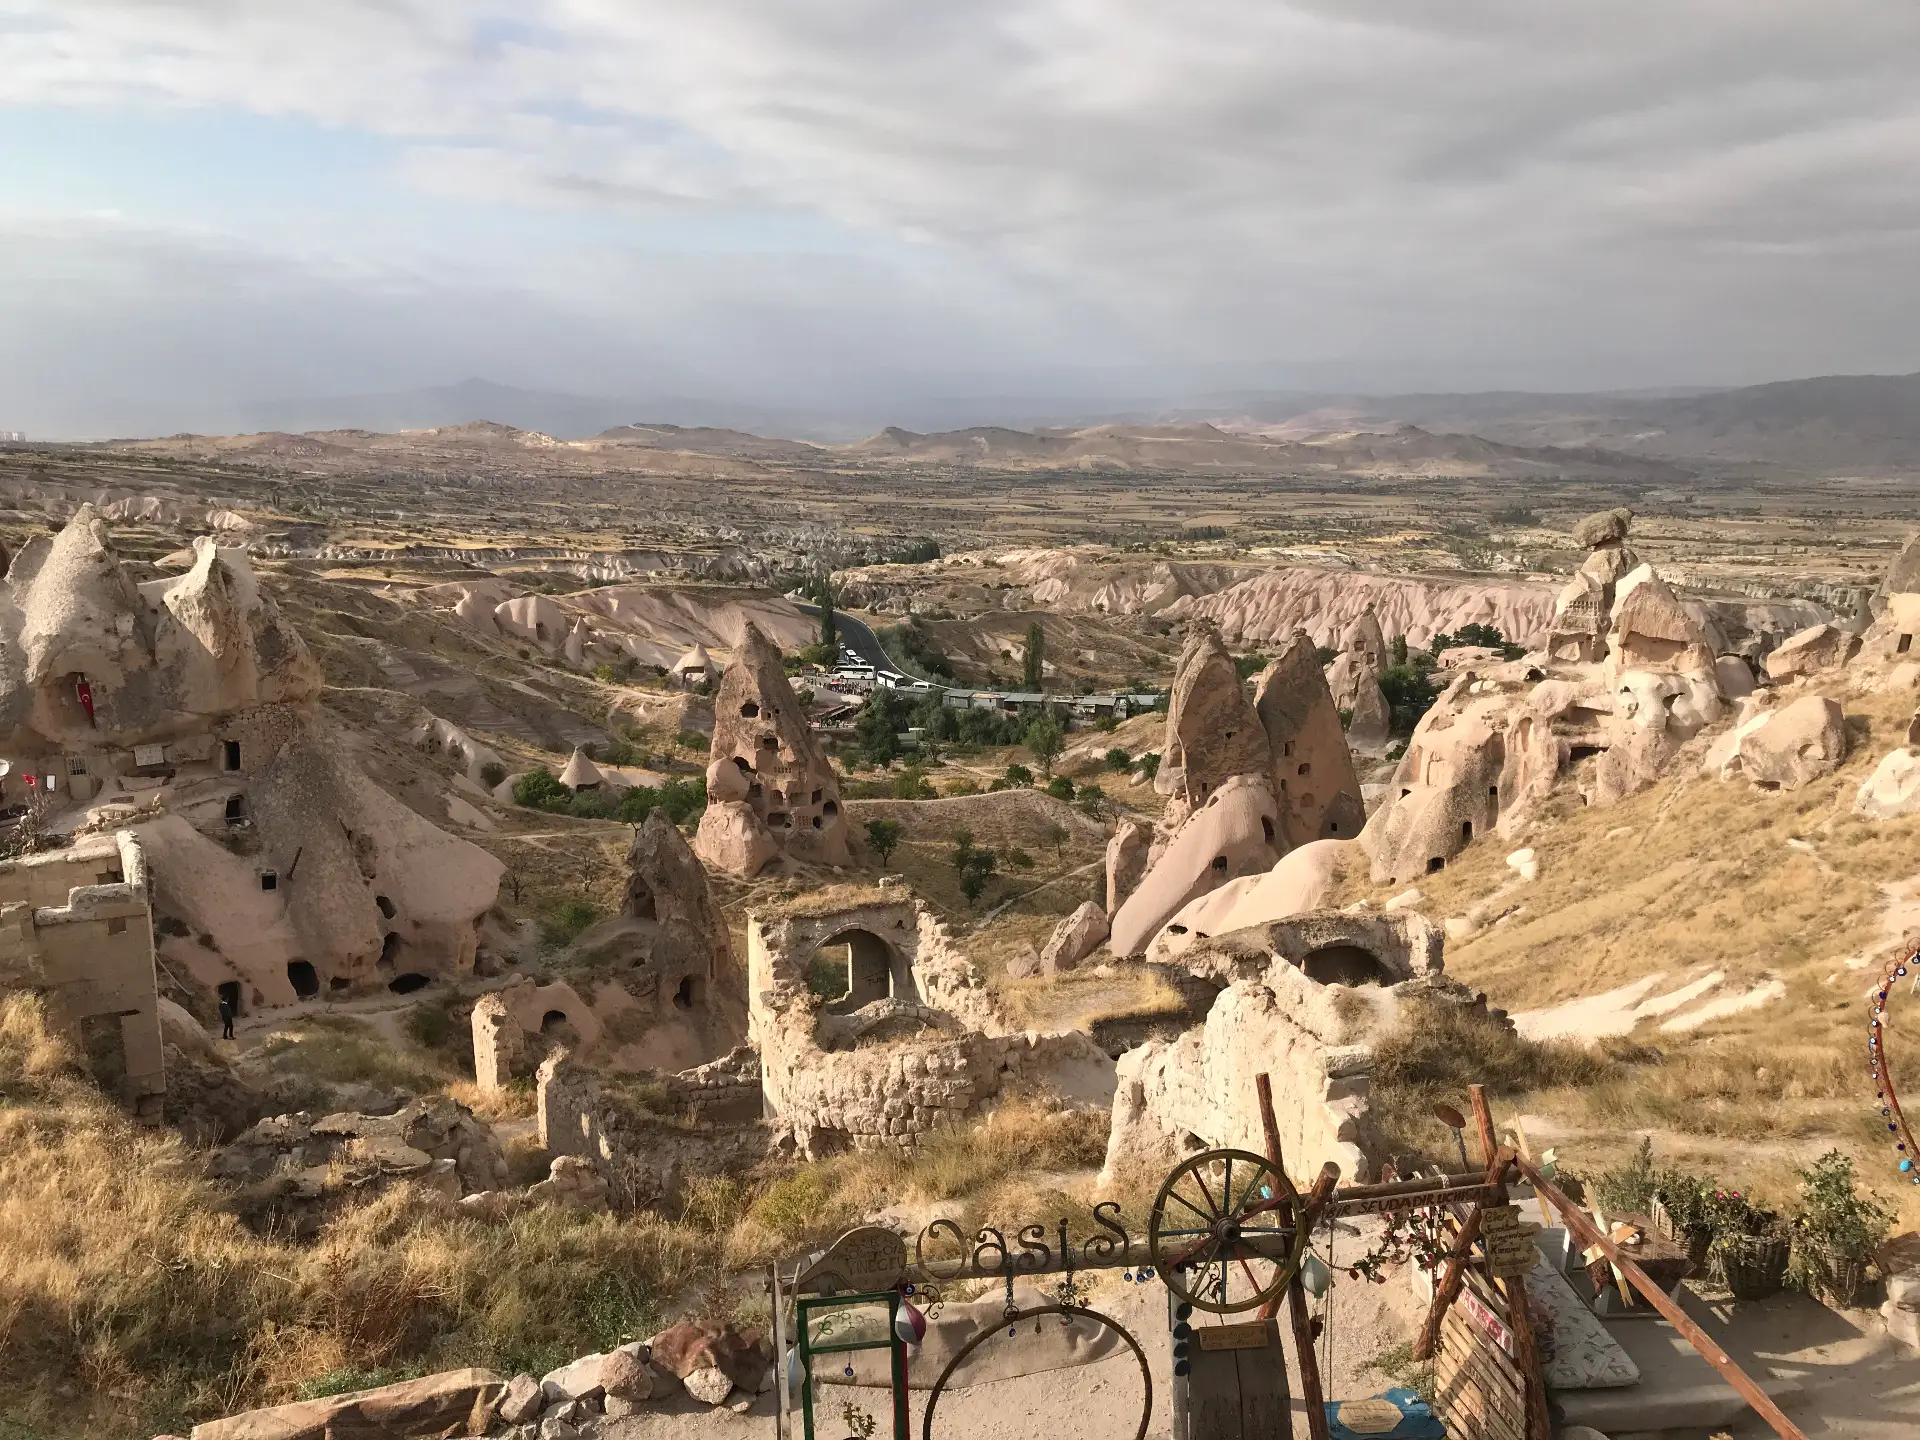 Cappadocia Uchisar